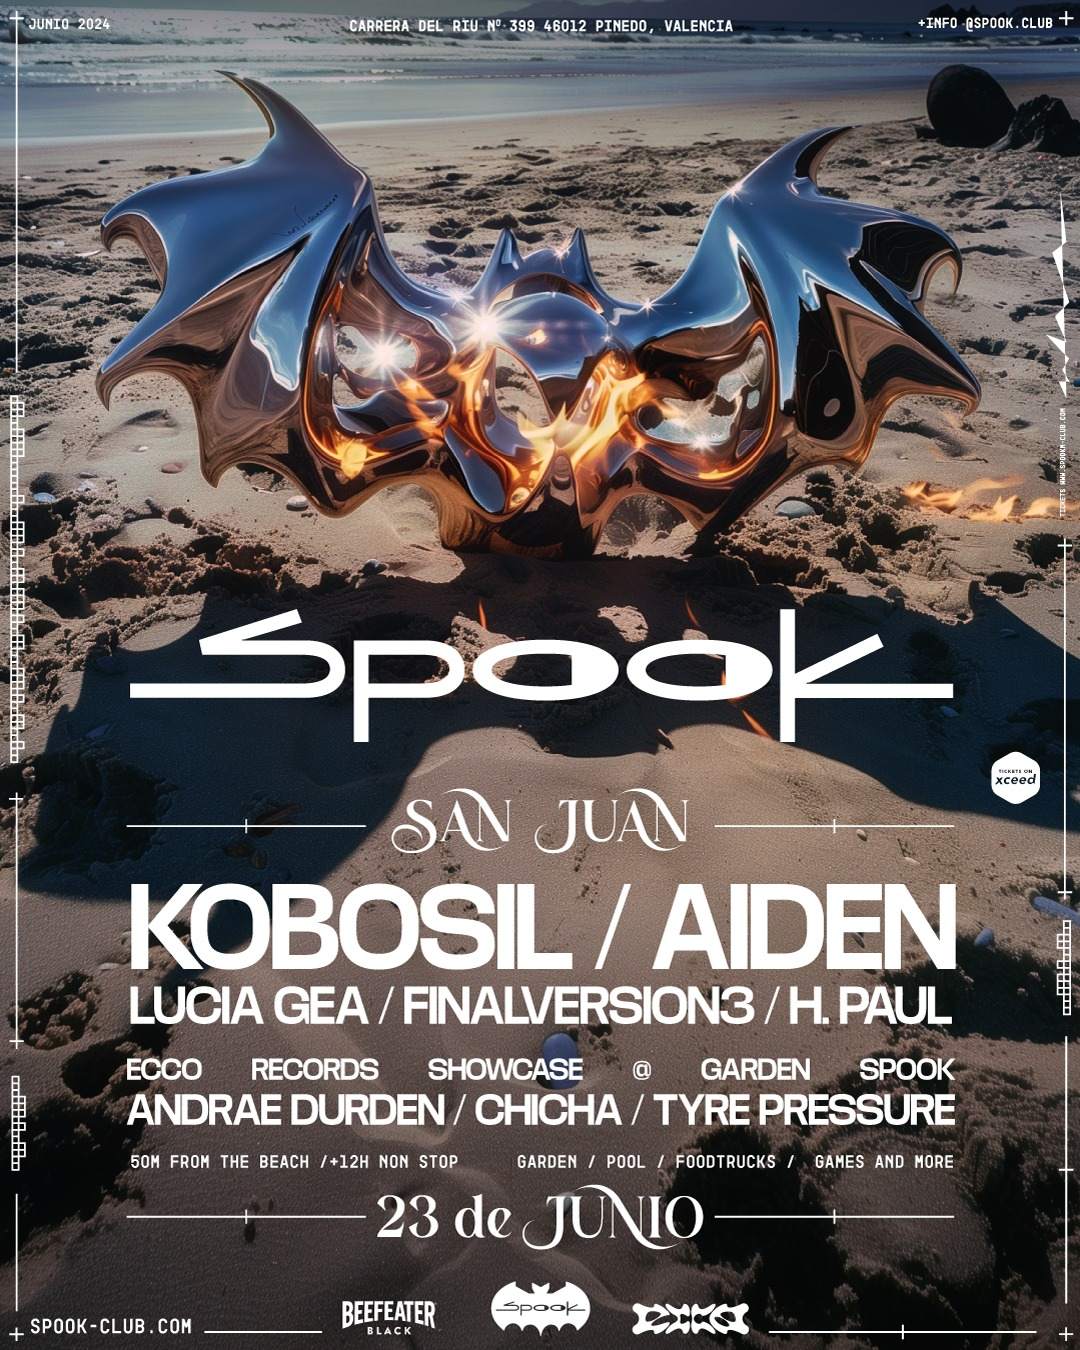 SAN JUAN: Kobosil & Aiden + Ecco Records showcase - フライヤー表